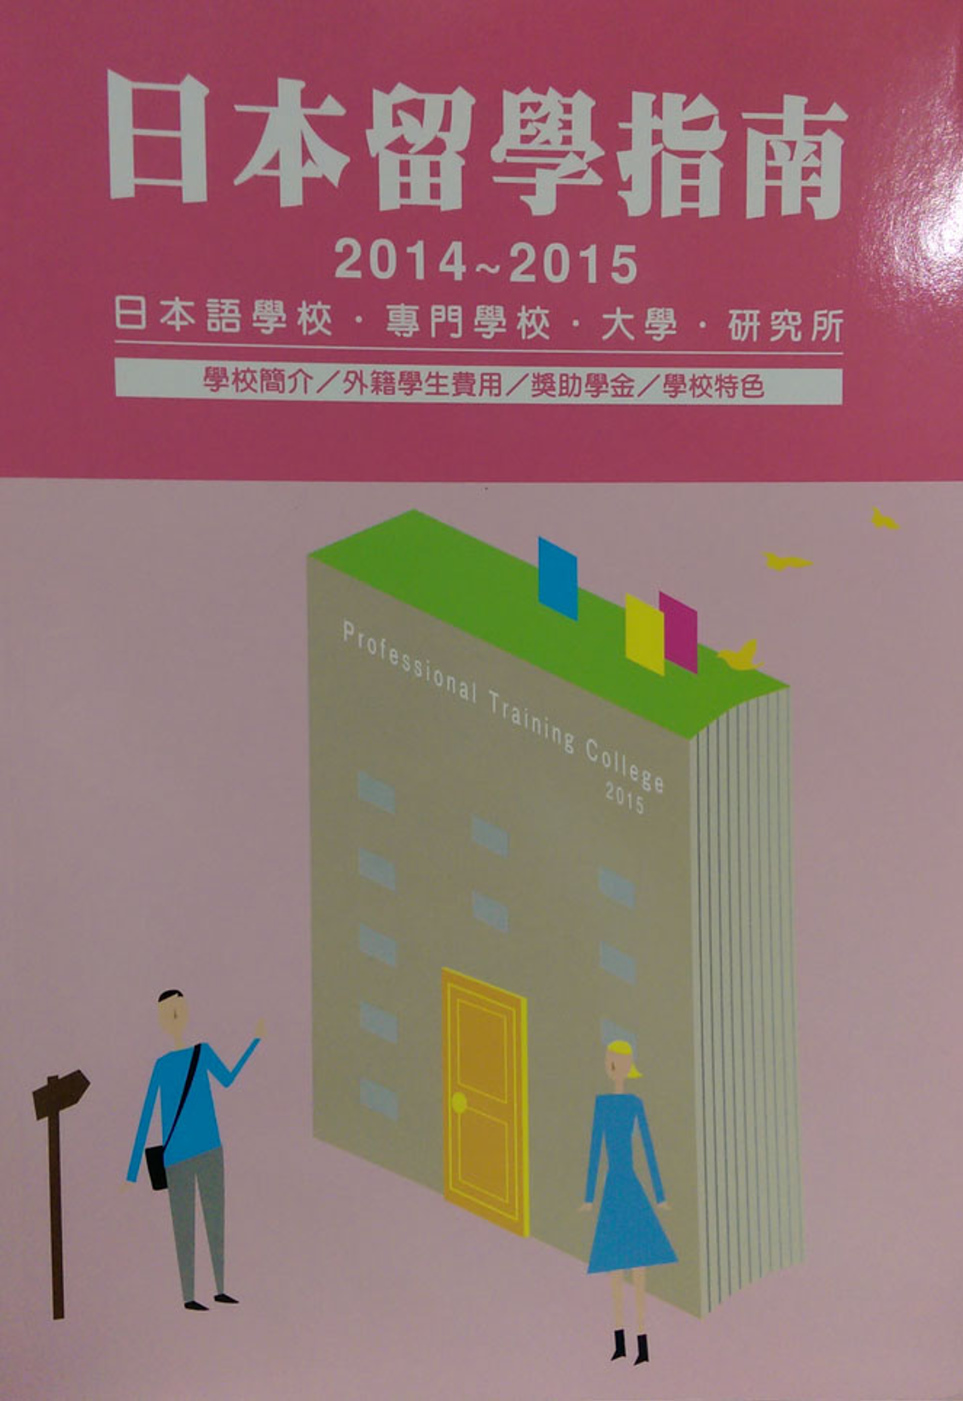 日本留學指南2014-2015